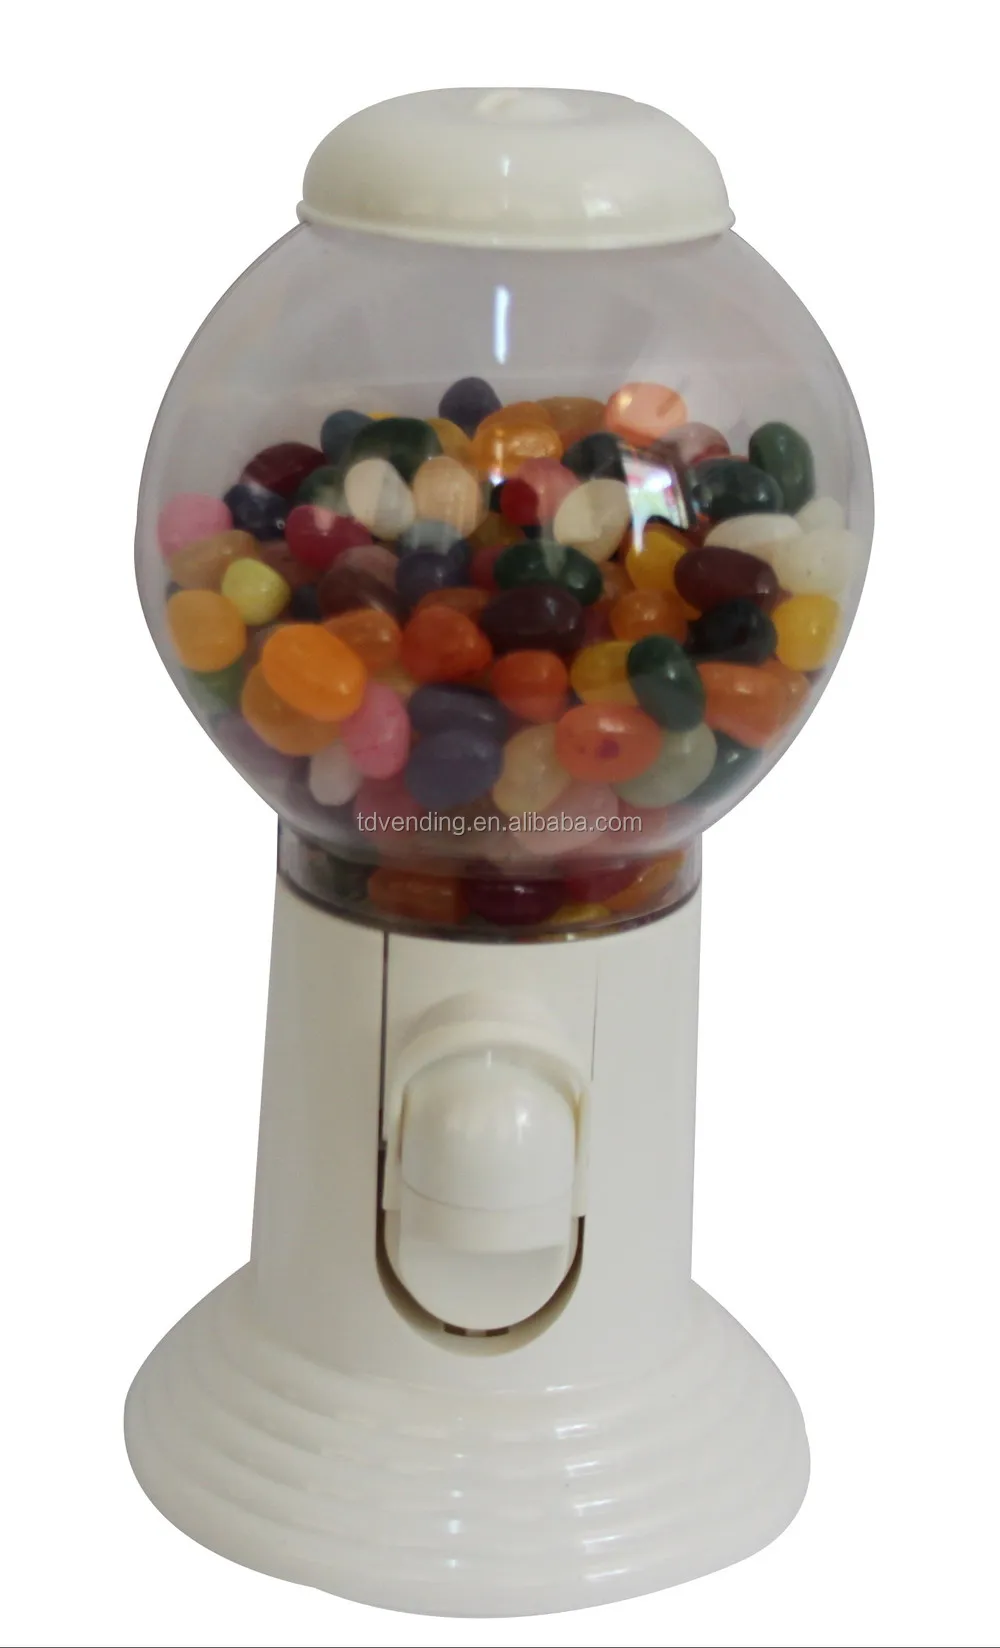 GAESHOW Portable enfants bonbons Machine en plastique Mini Gumballs distributeur enfants maternelle cadeau ABS vert 